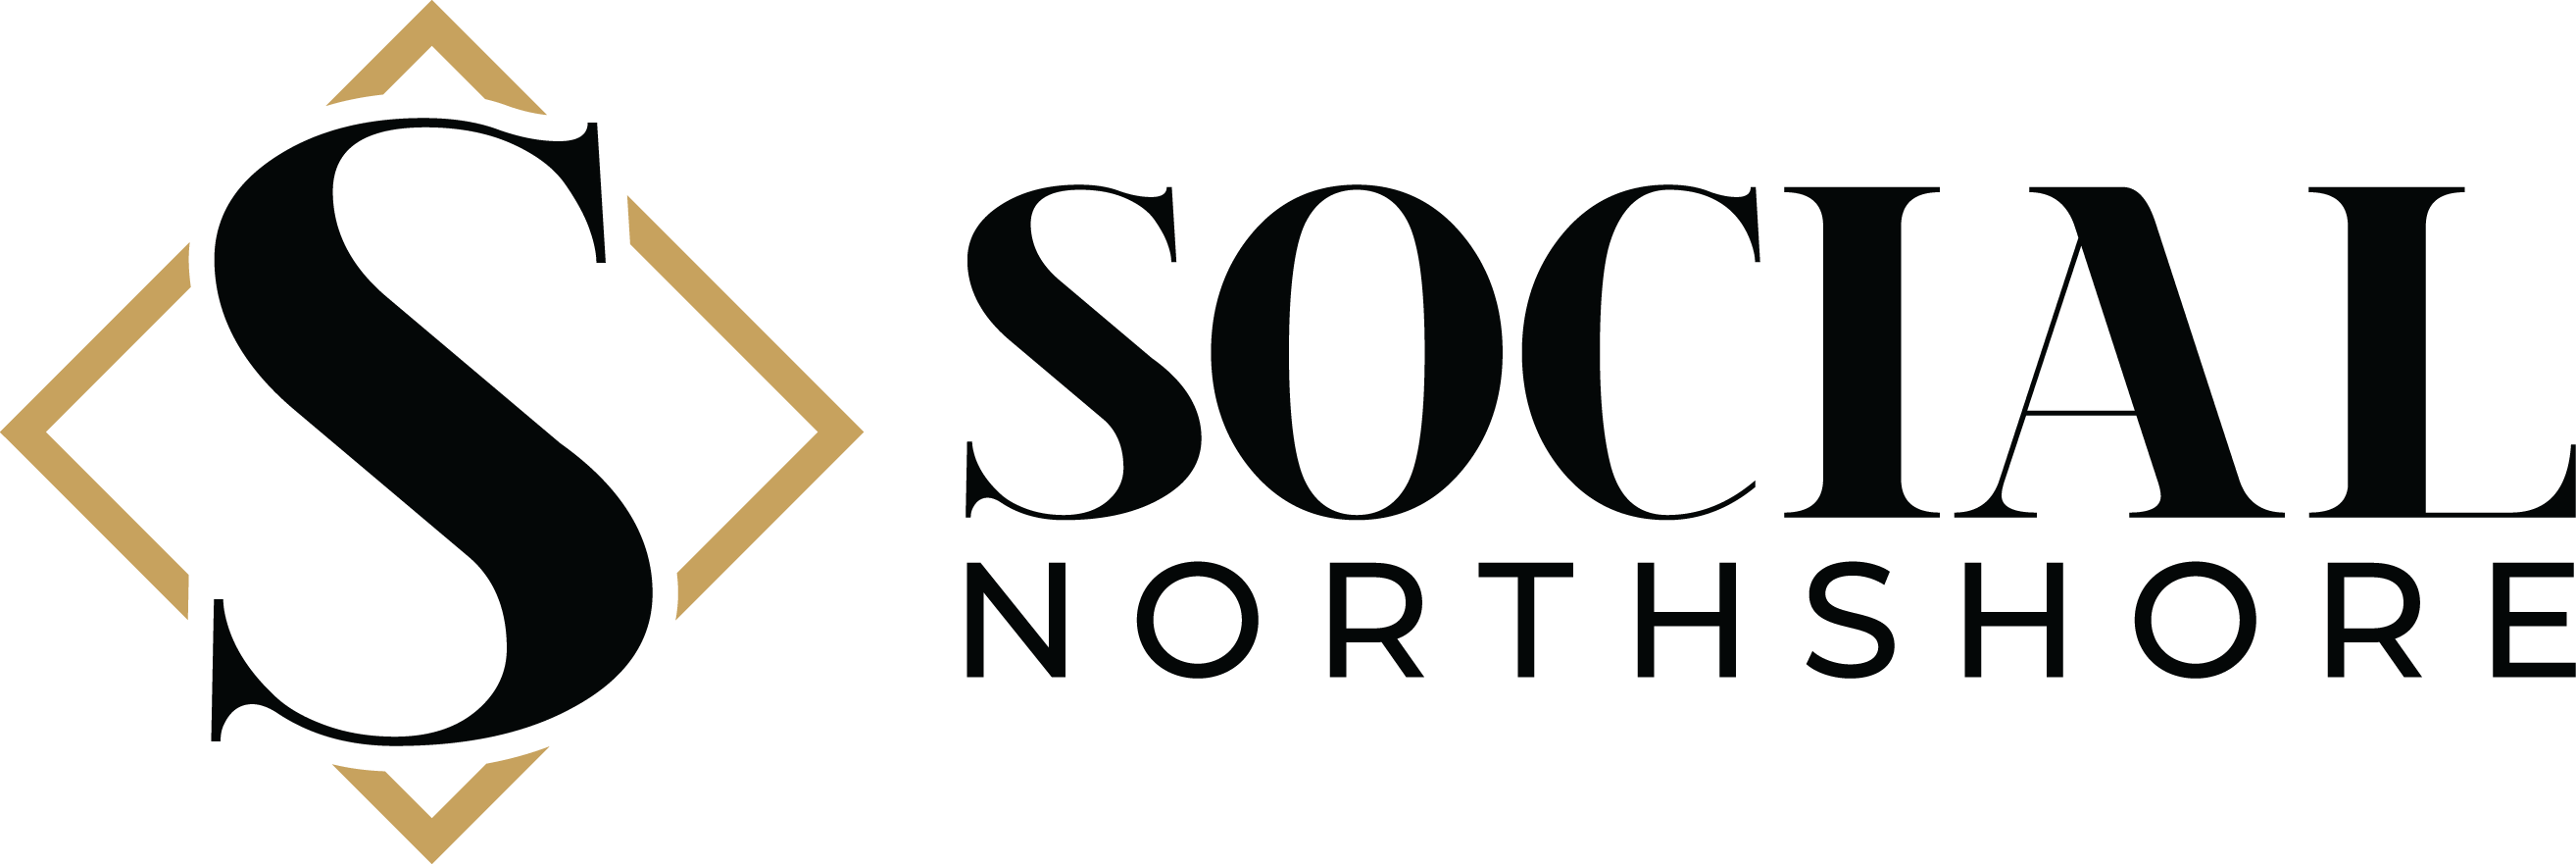 Social Northshore